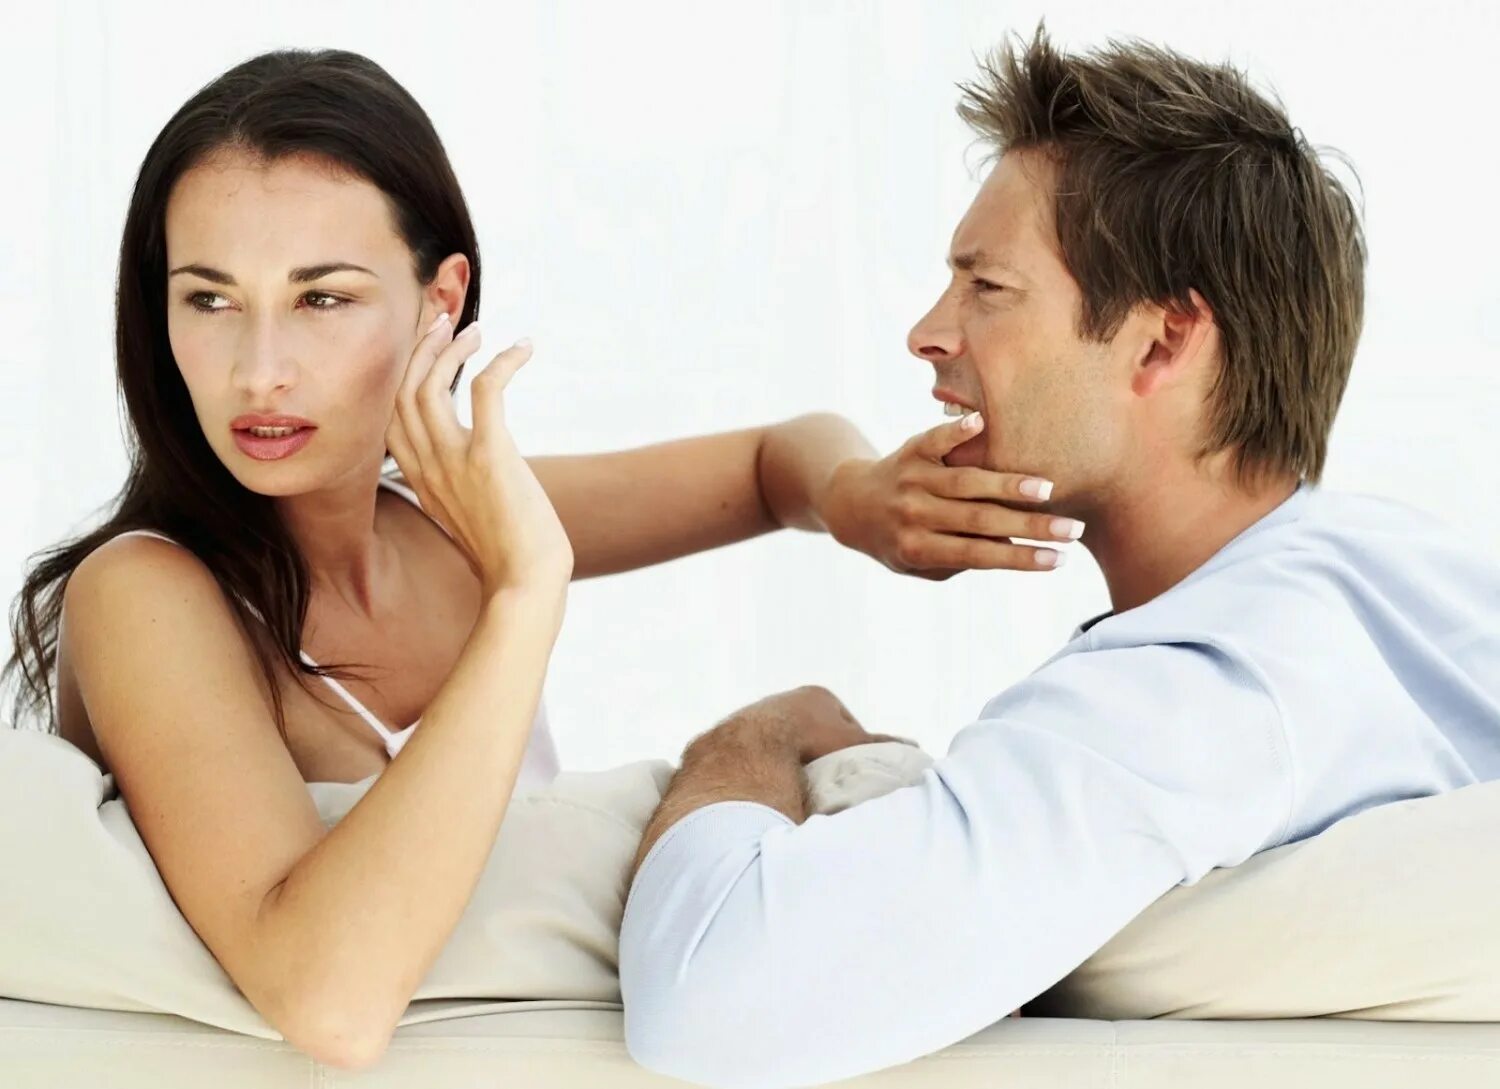 Жен доставляет мужу удовольствие. Мужчина и женщина ссорятся. Психология отношений между мужчиной и женщиной. Ссооа мужчины и женщин. Взаимоотношения мужчины и женщины.